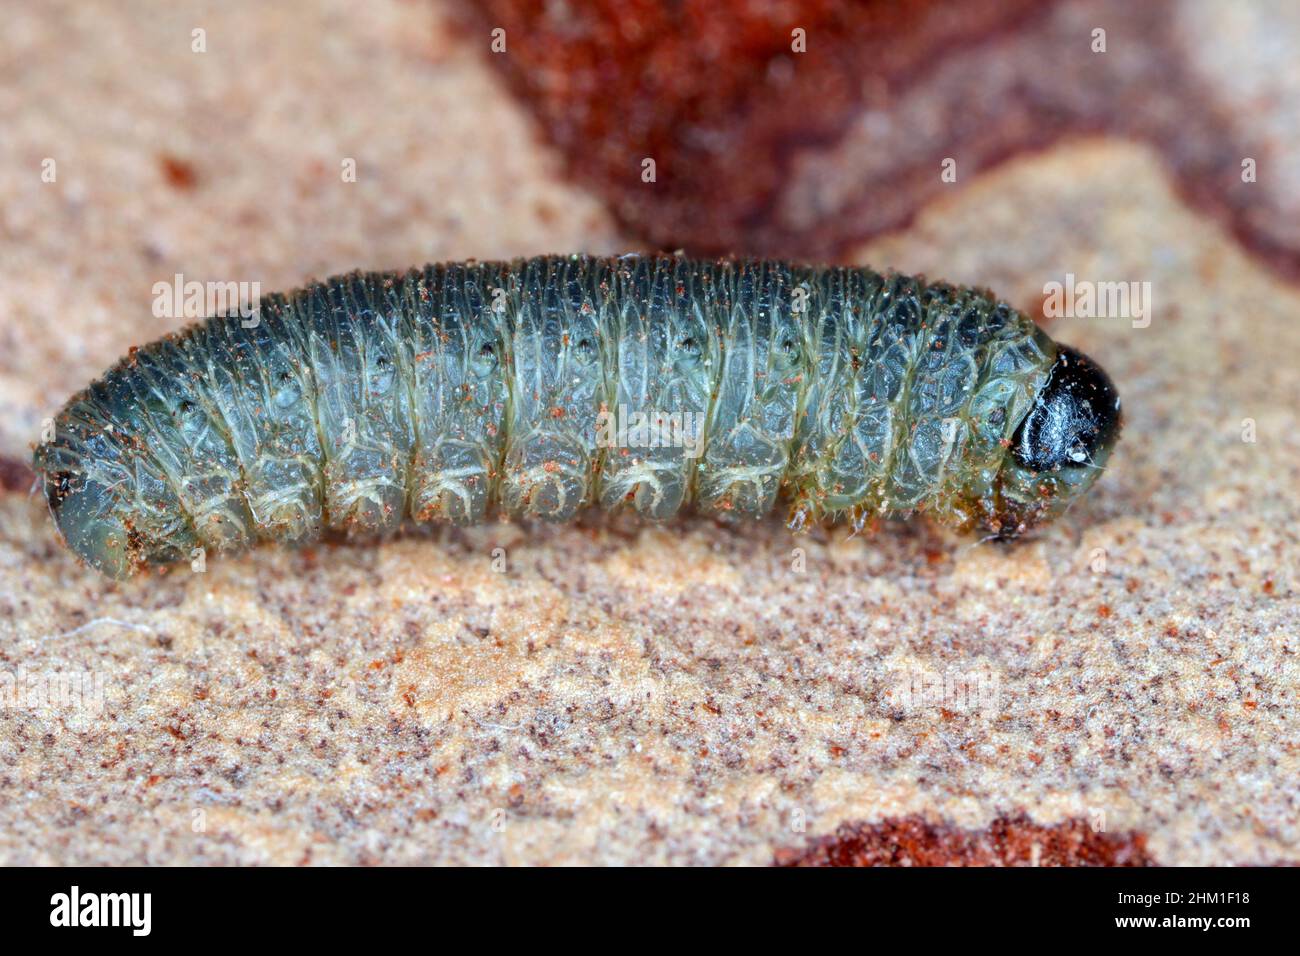 La larva della mosca che vive nella corteccia del pino. Foto Stock